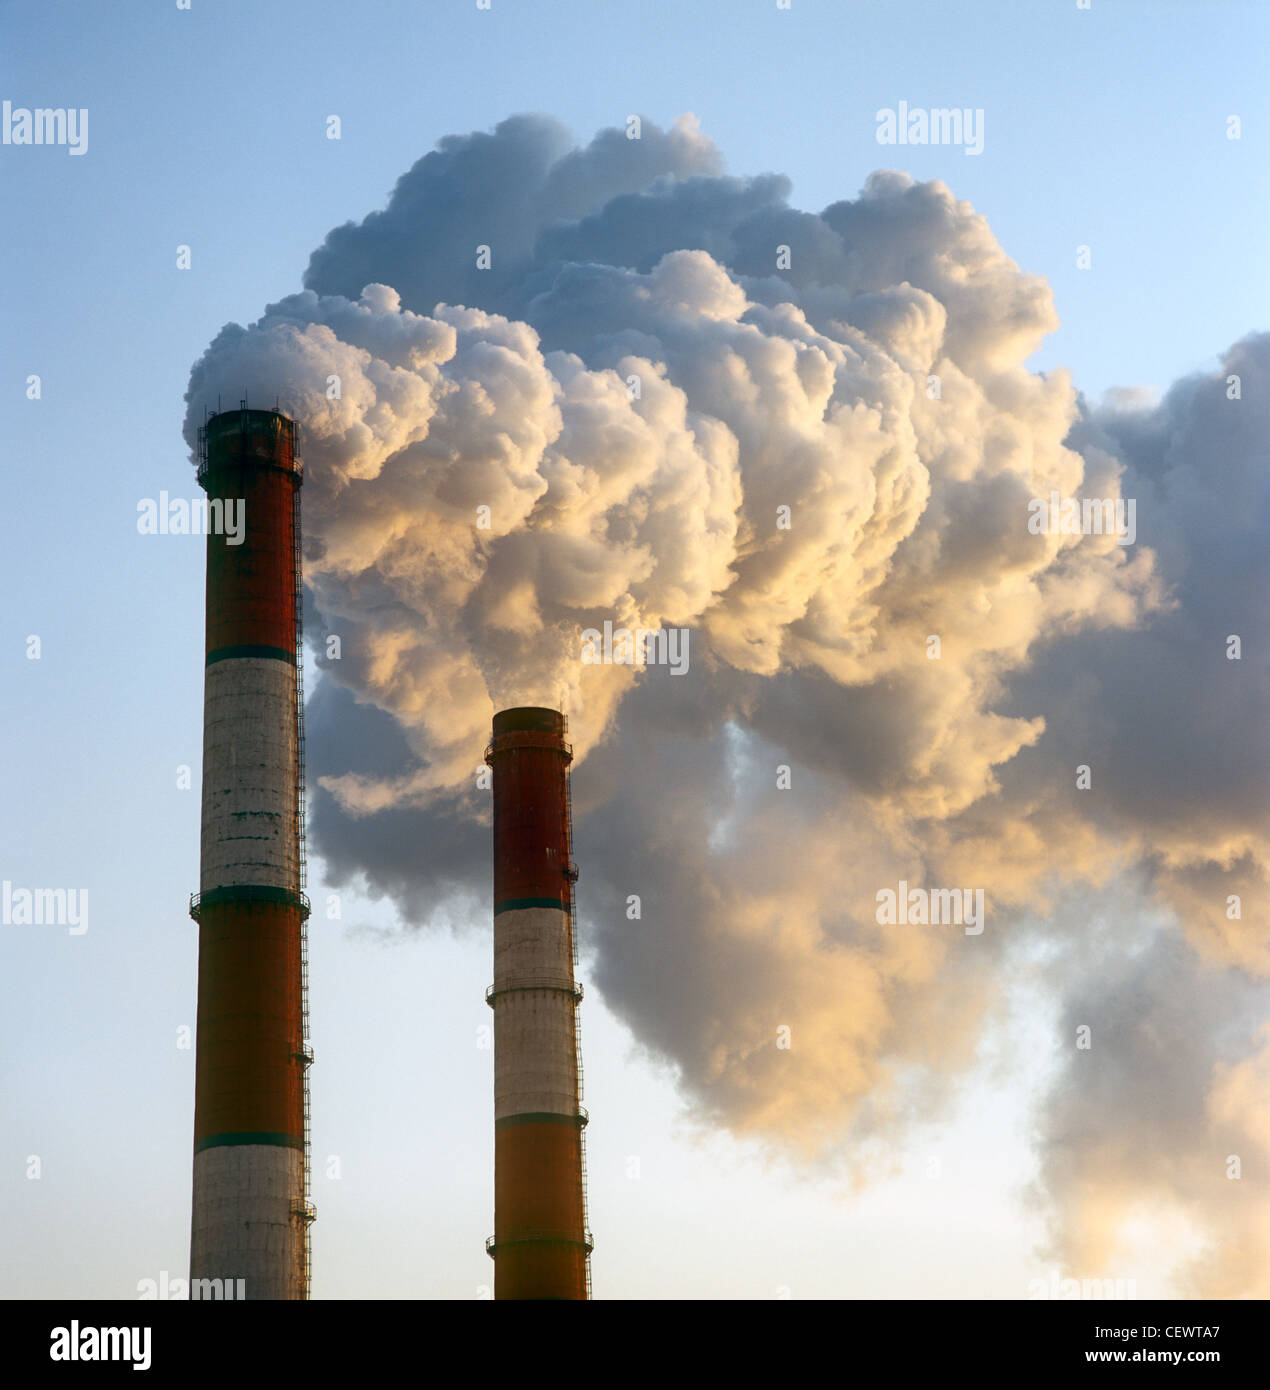 La pollution de l'air par la fumée sortir de deux cheminées d'usine. Banque D'Images